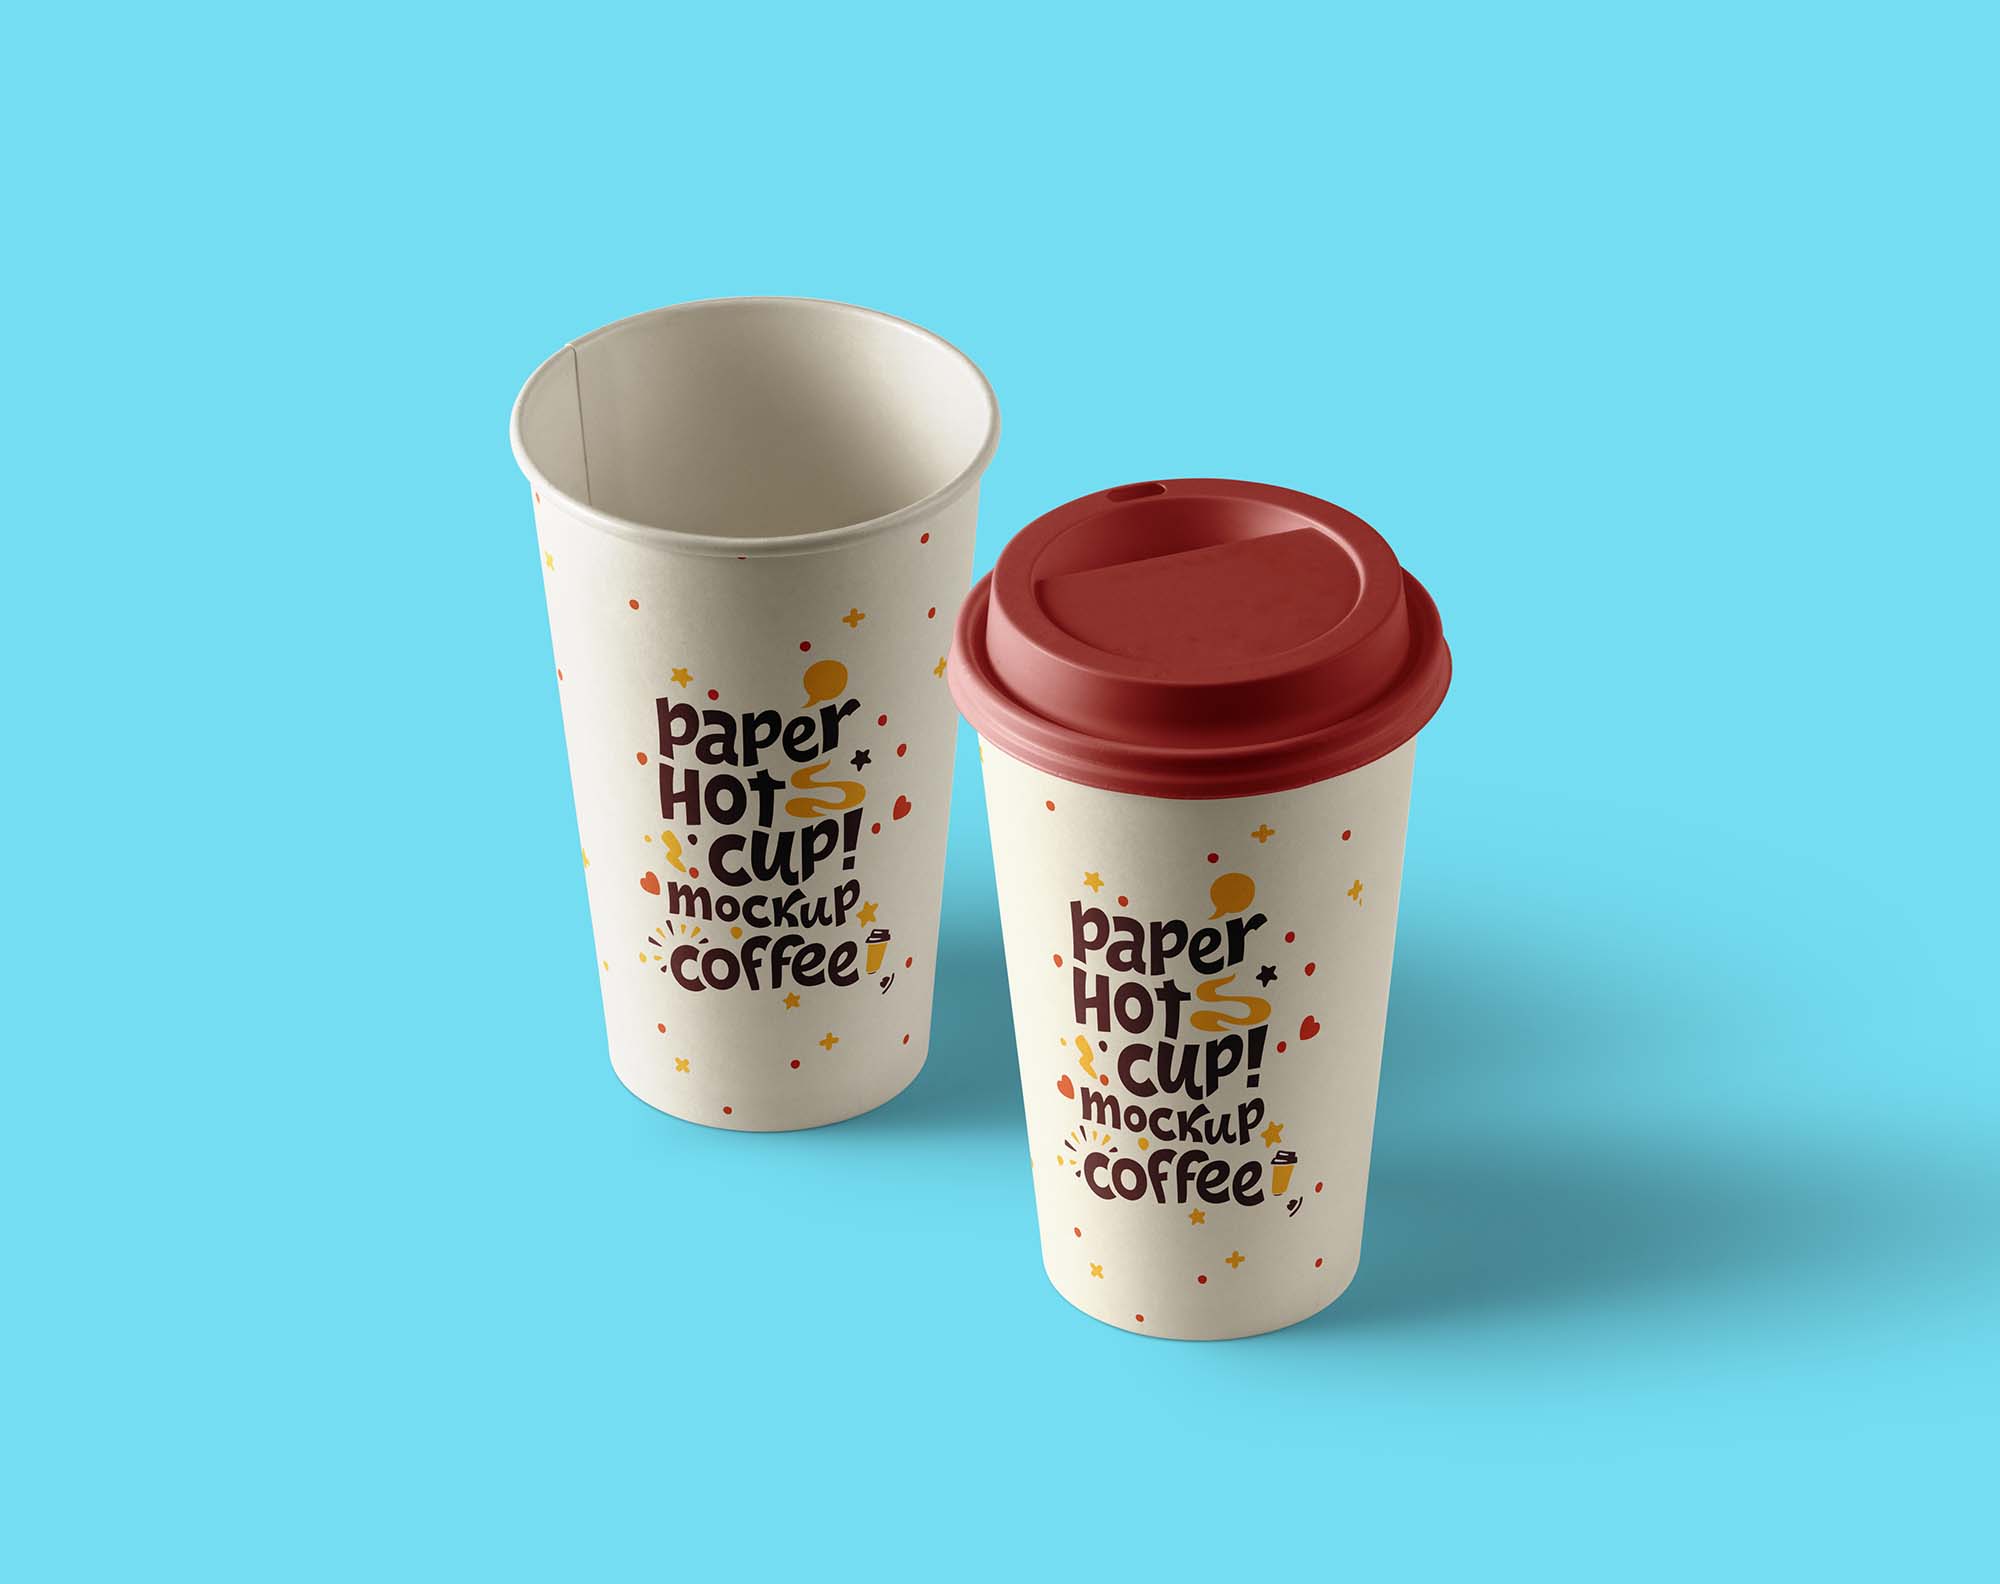 Cup файлы. Стаканчик кофе. Мокап стаканчик кофе. Кофе в бумажном стакане. Дизайн кофейных стаканчиков.